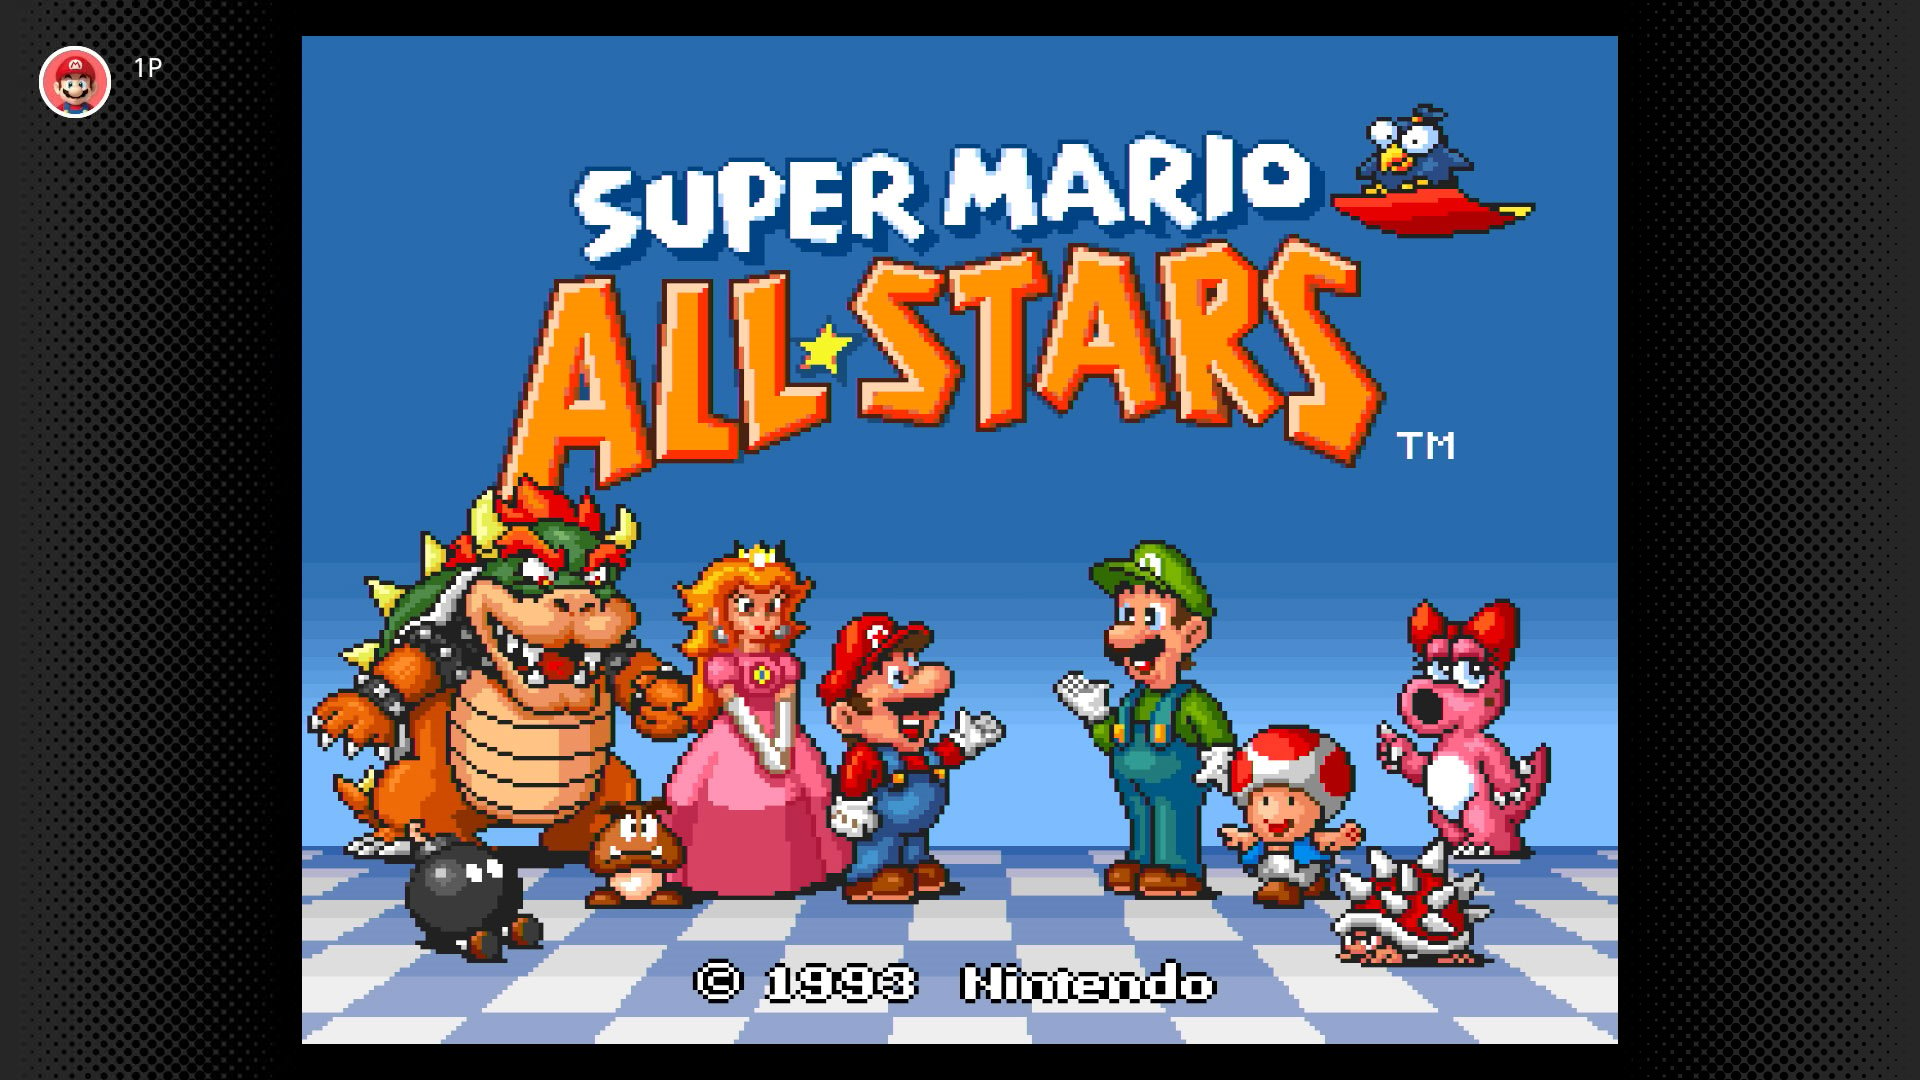 Super-Mario-All-Stars-SNES_09-03-20.jpg